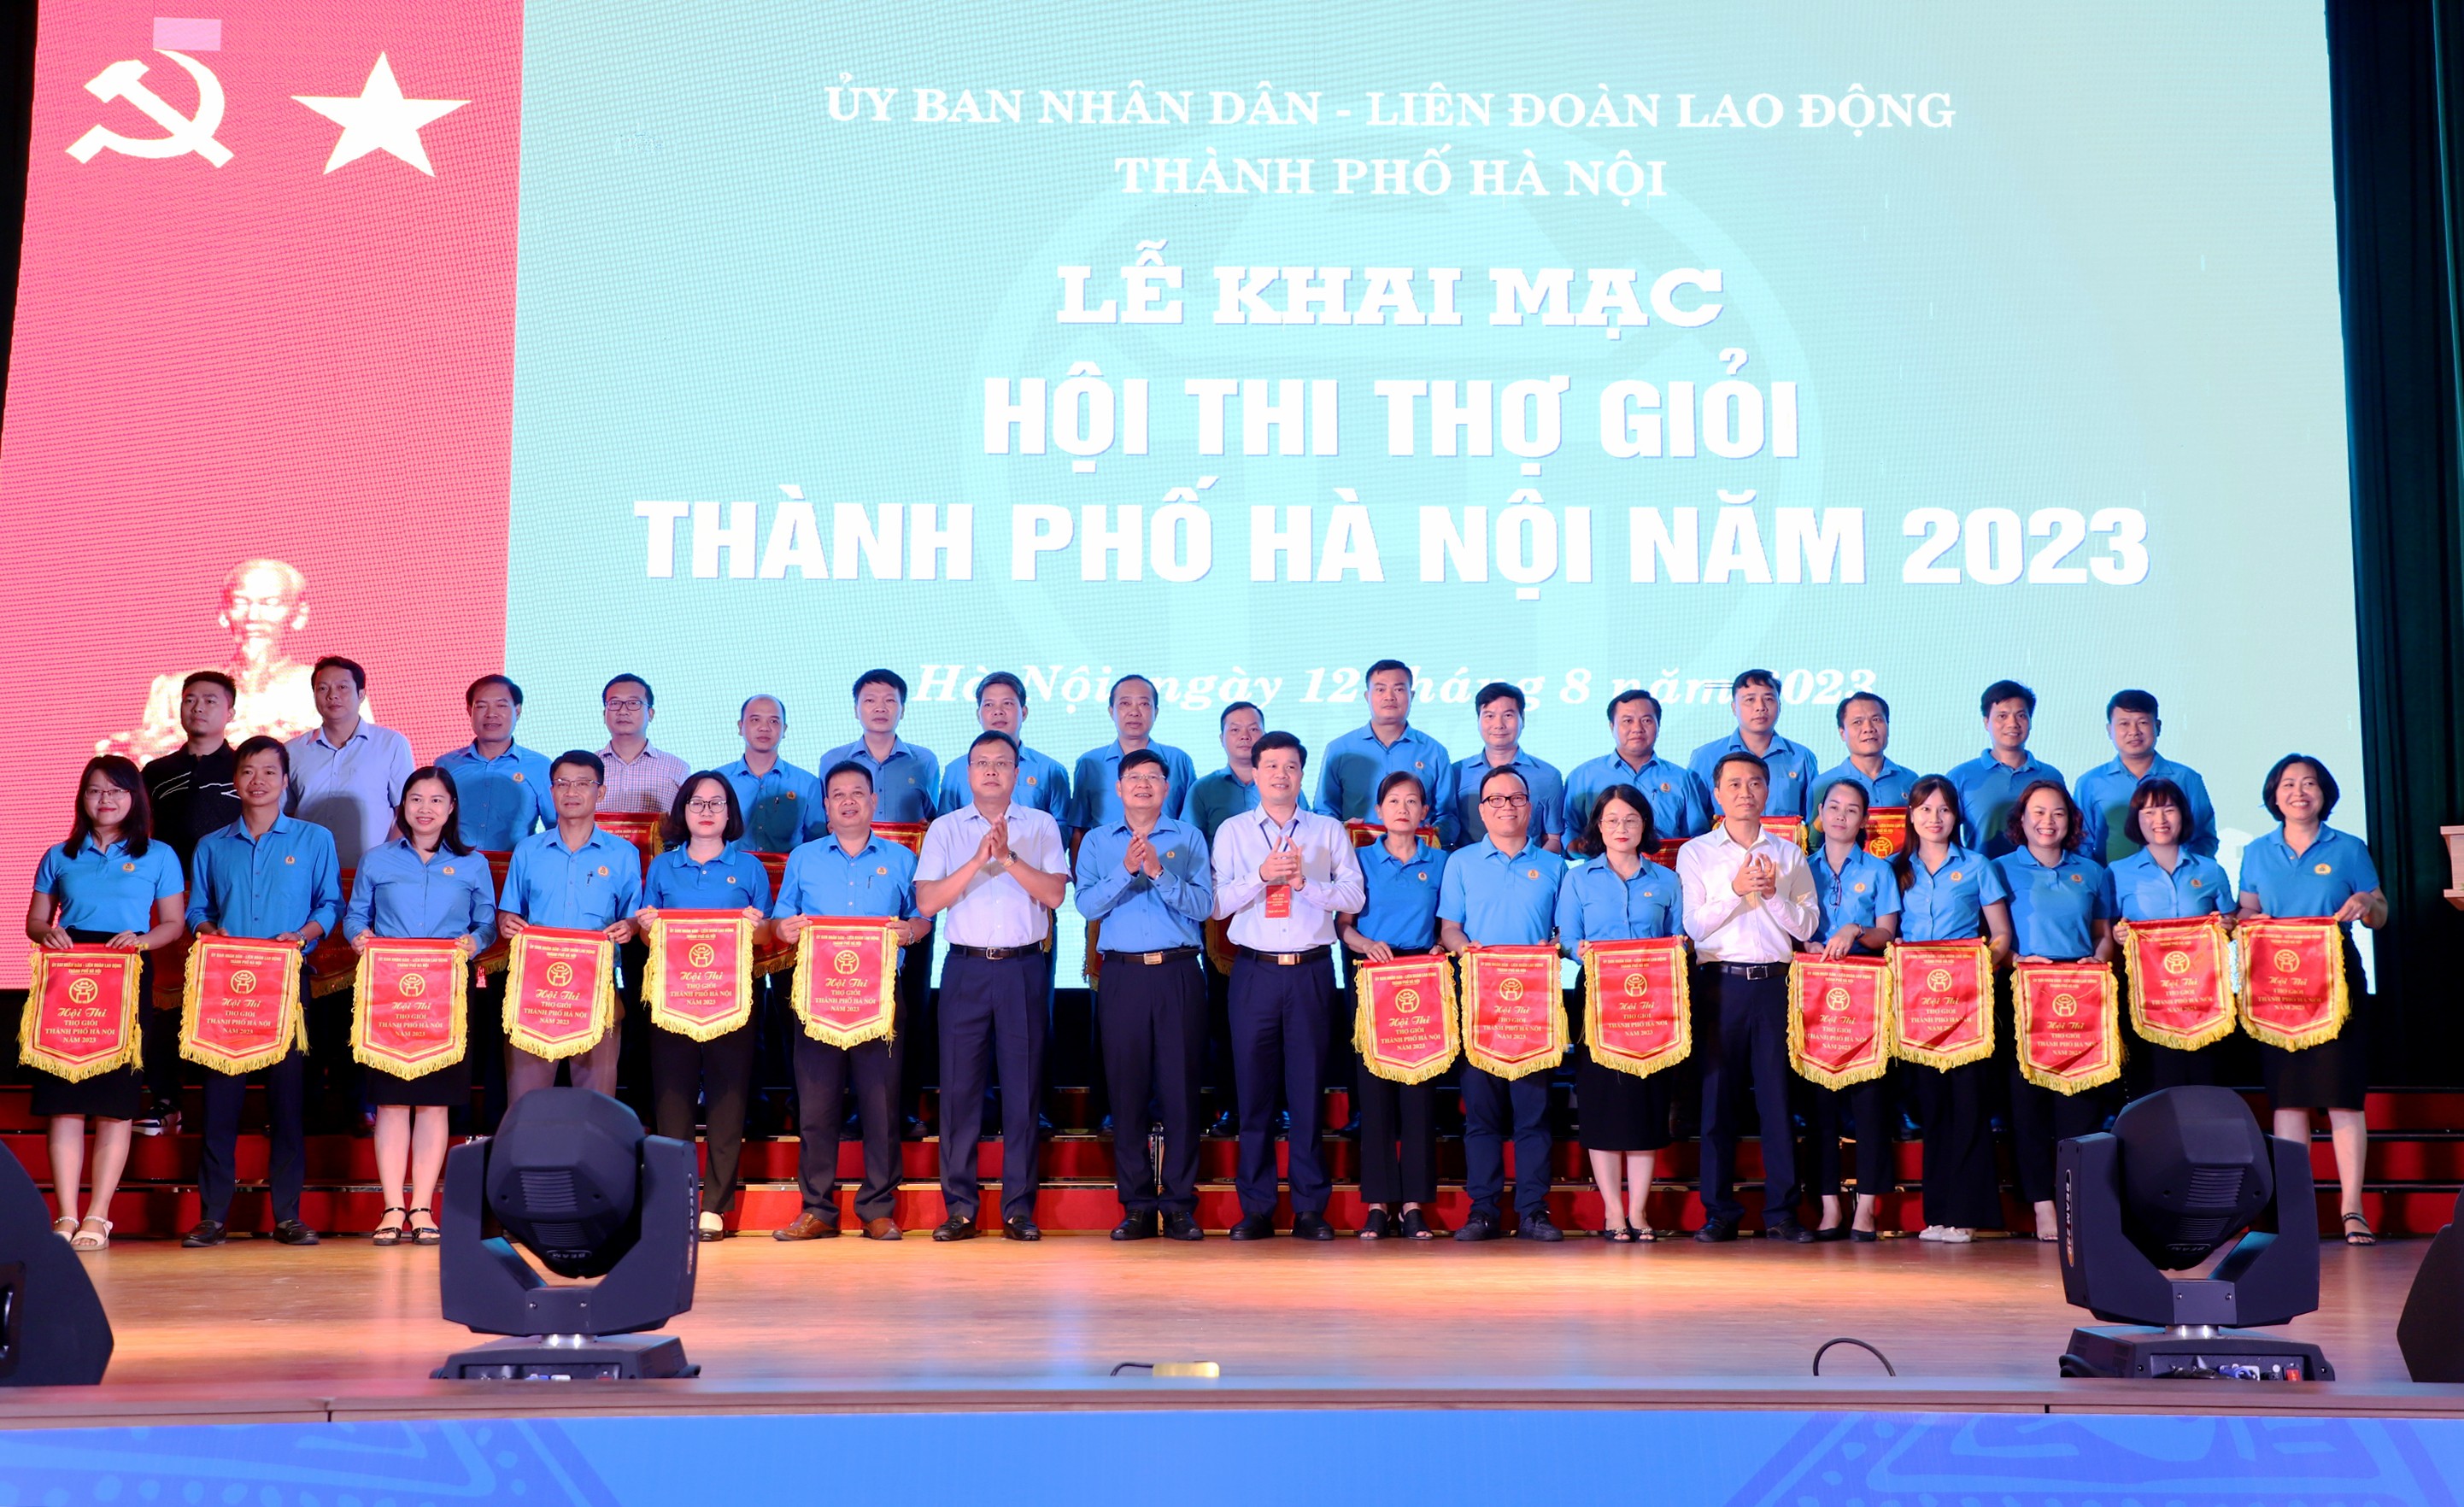 Khai mạc Hội thi thợ giỏi thành phố Hà Nội năm 2023